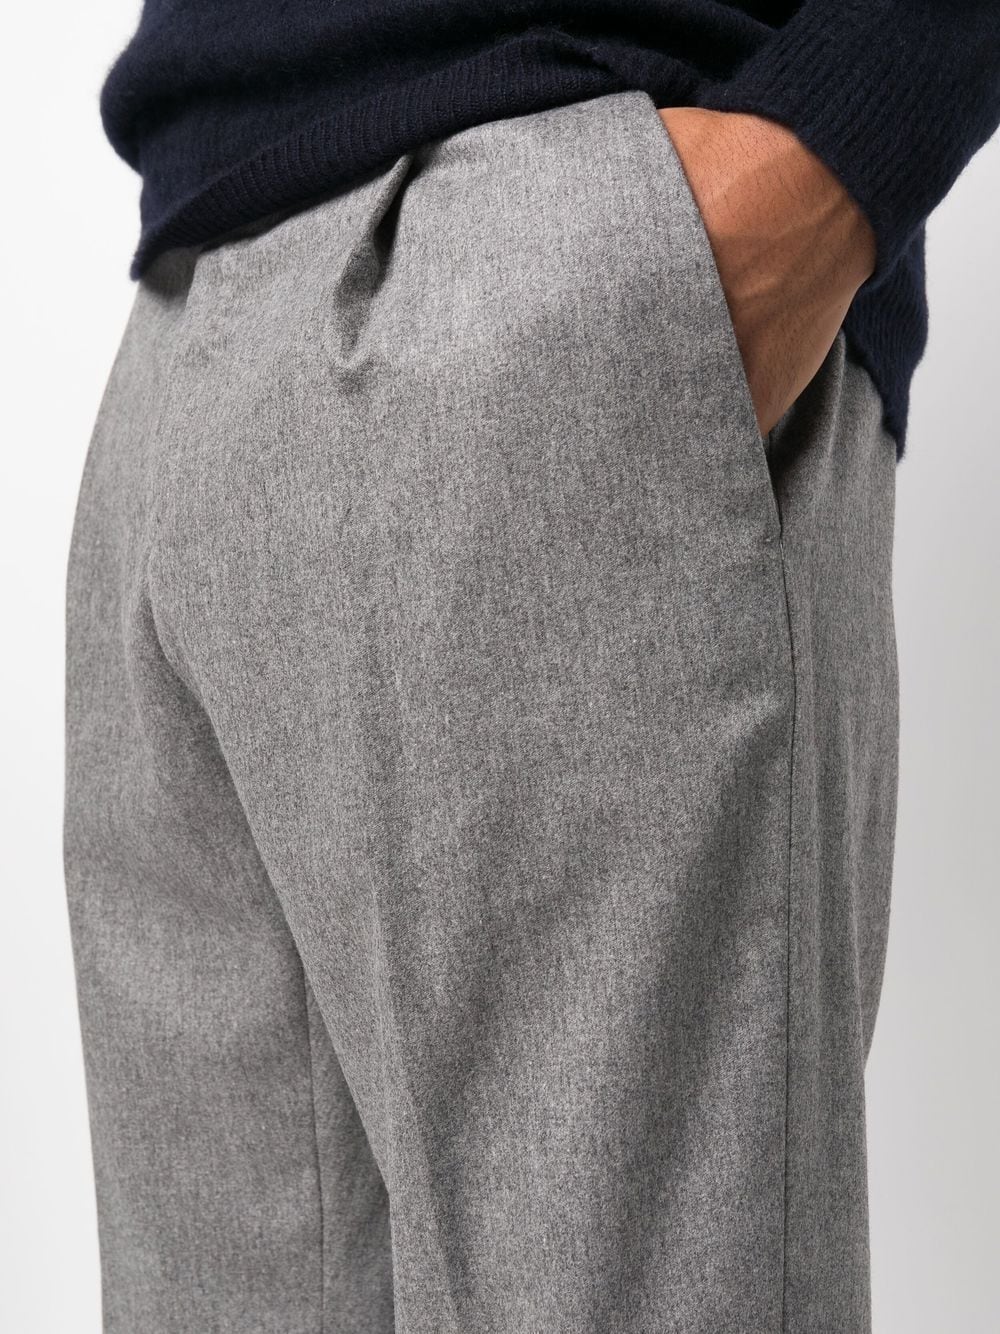 pantalone rebel grigio con risvolto